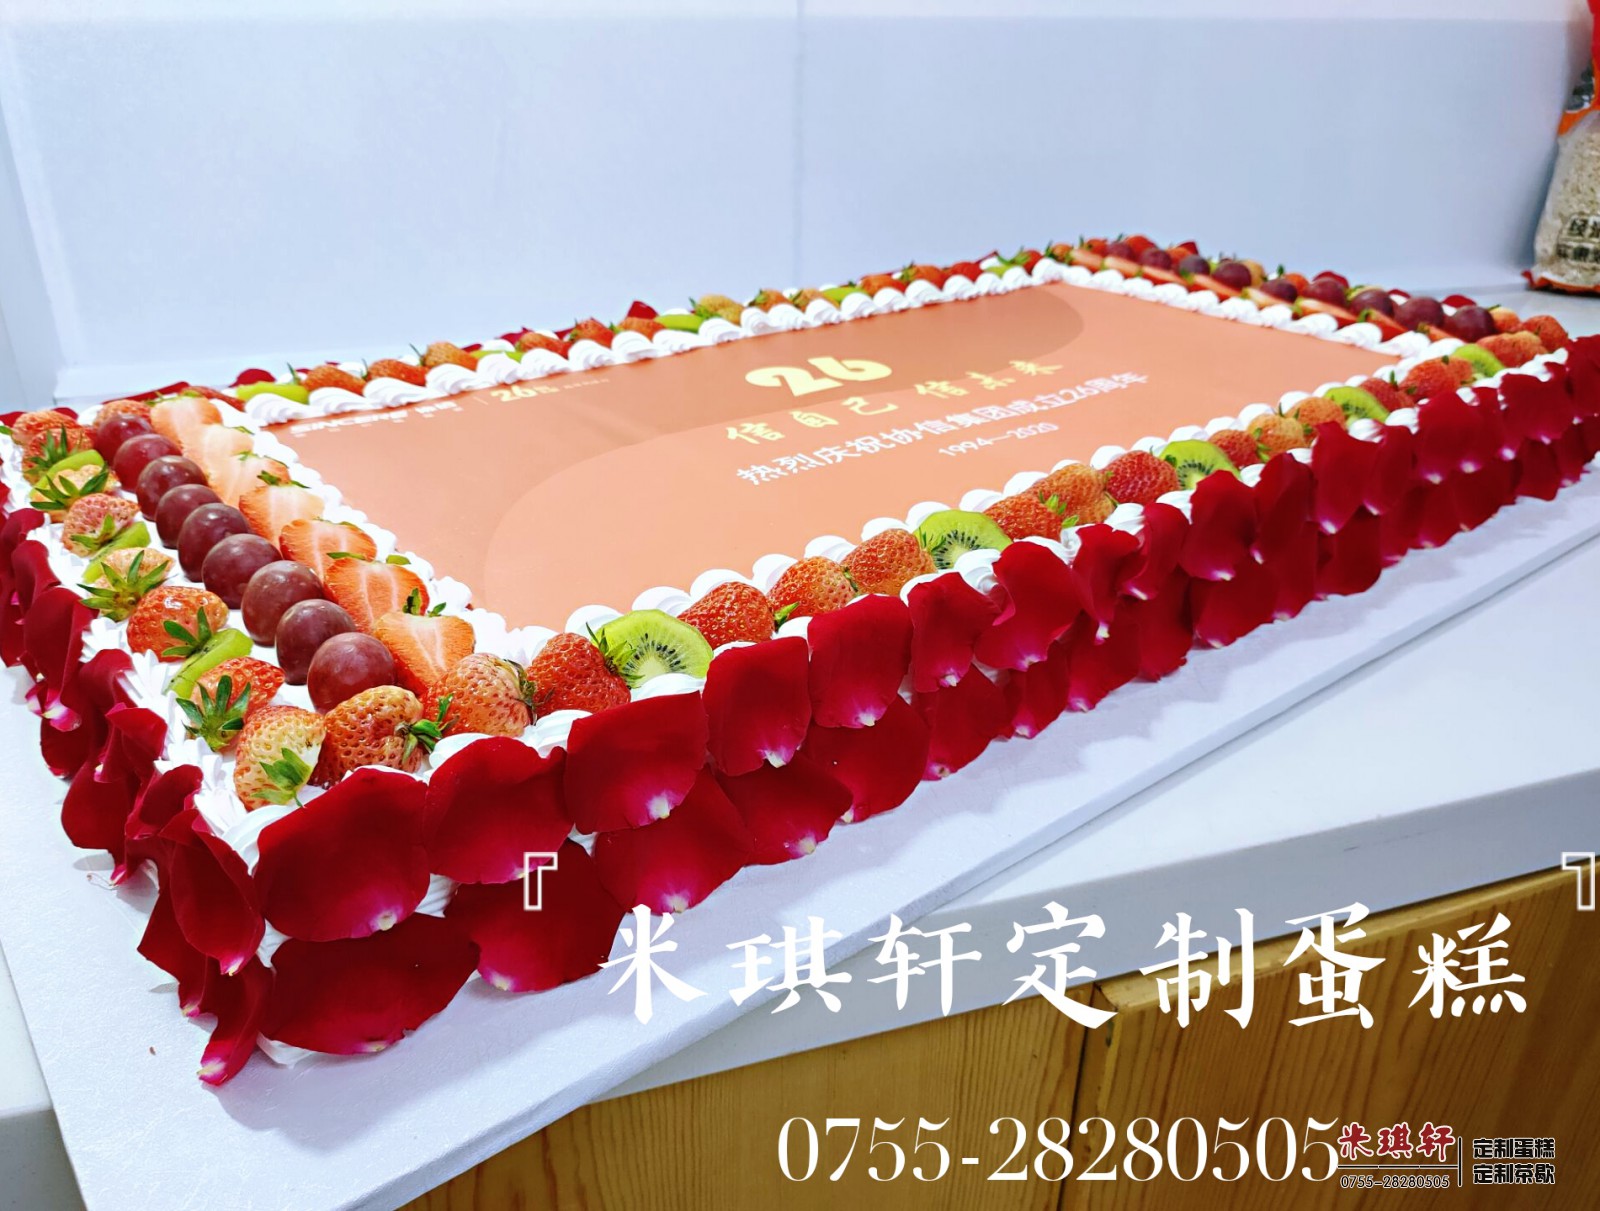 为恒大人寿定制的2周年庆典蛋糕-企业定制蛋糕案例-米琪轩：0755-28280505